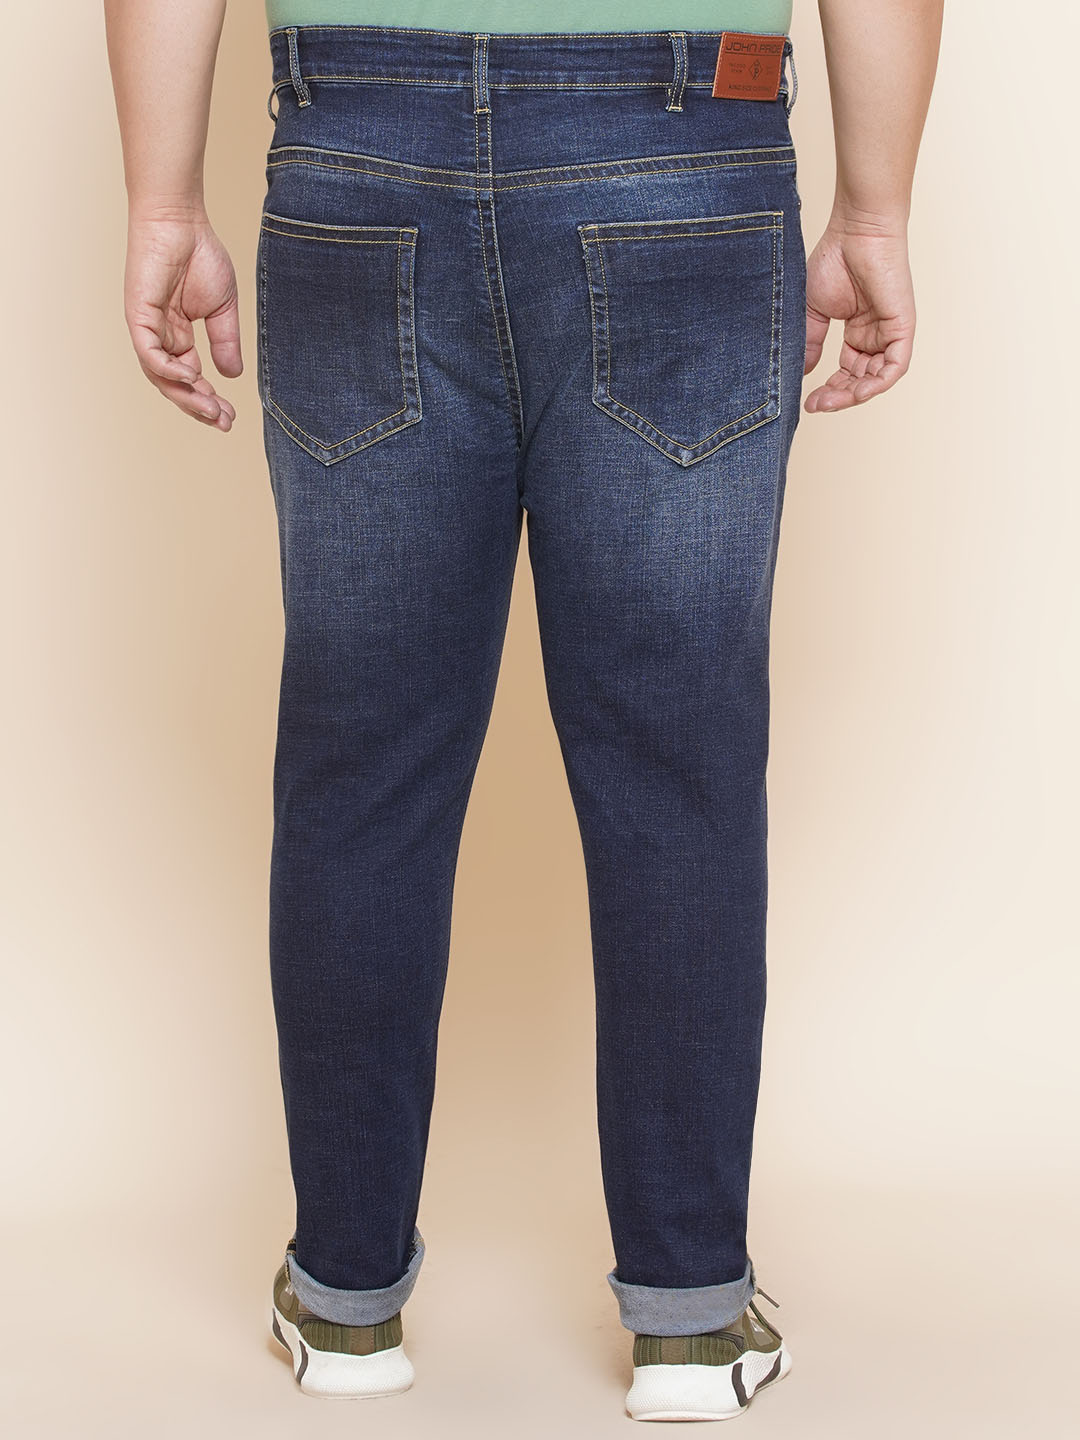 bottomwear/jeans/JPJ12297/jpj12297-5.jpg